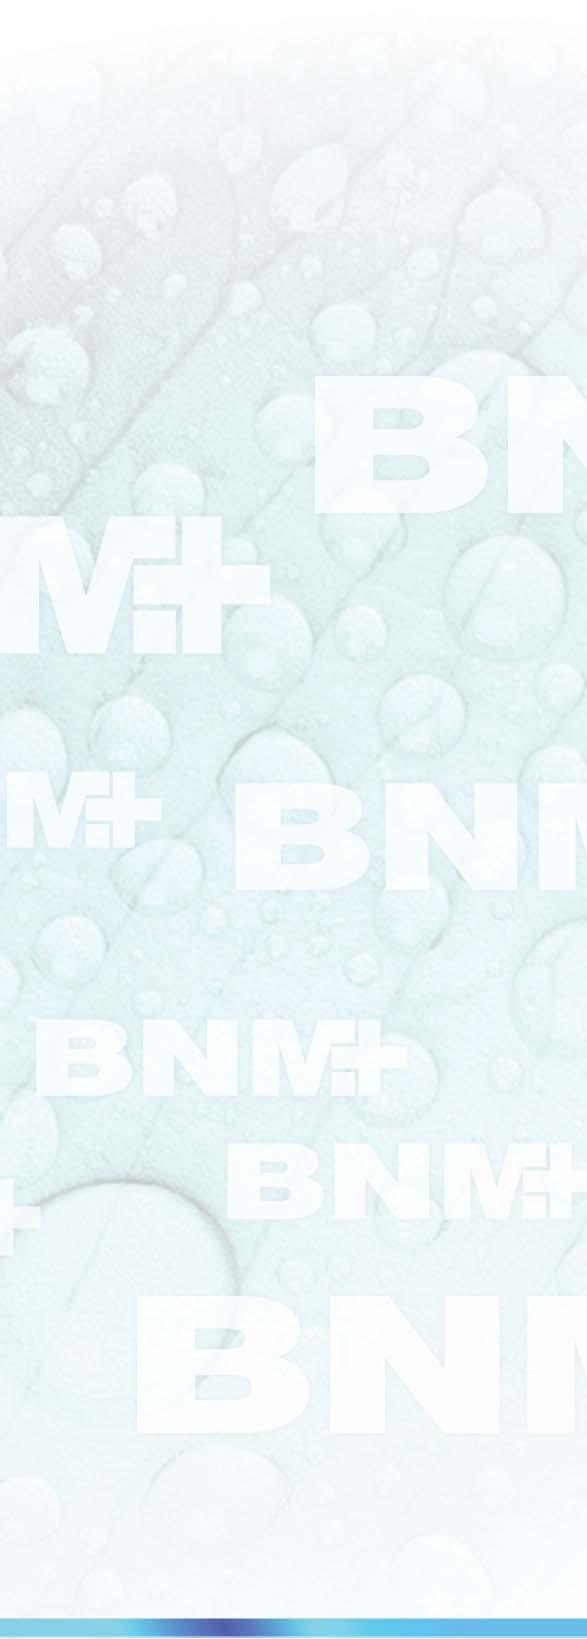 Bemutatkozás A BNM azért jött létre, hogy olyan minőségi egészségmegőrző és gyógyászati termékek gyártására és fejlesztésére koncentráljon, amelyek jól képviselik a cég